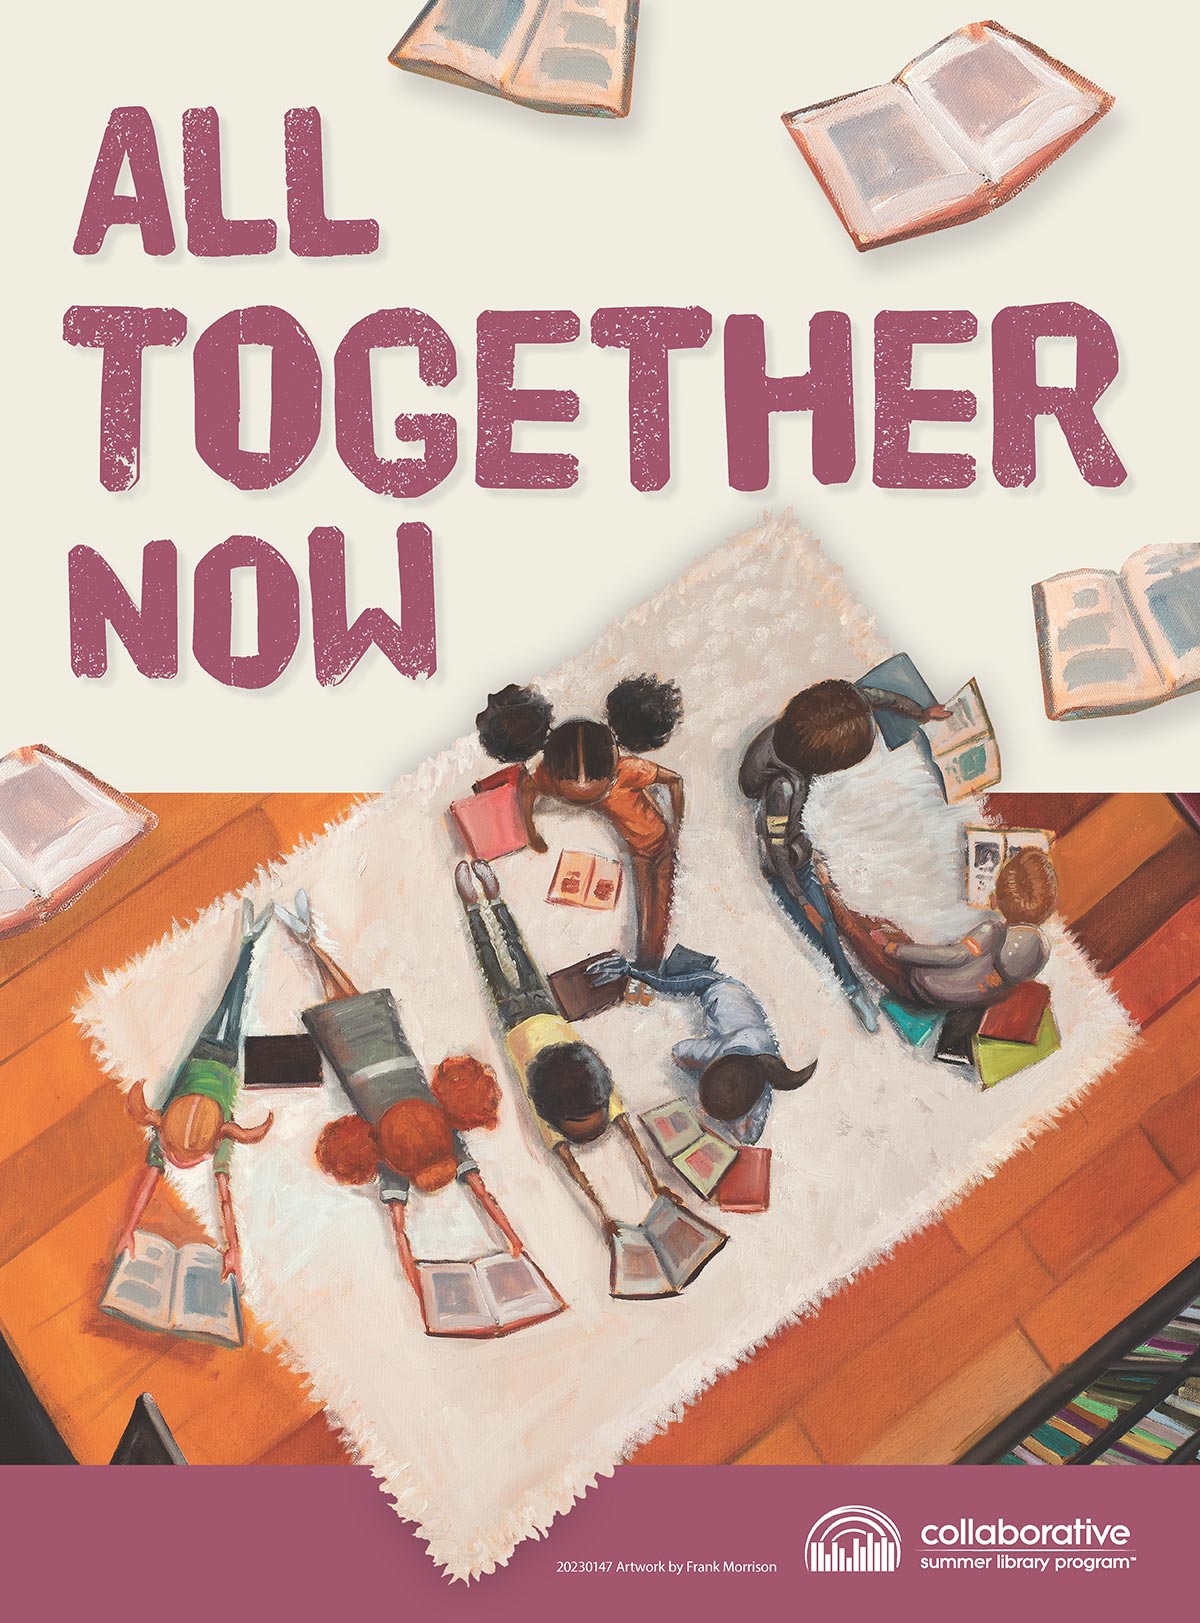 Children's summer reading program poster